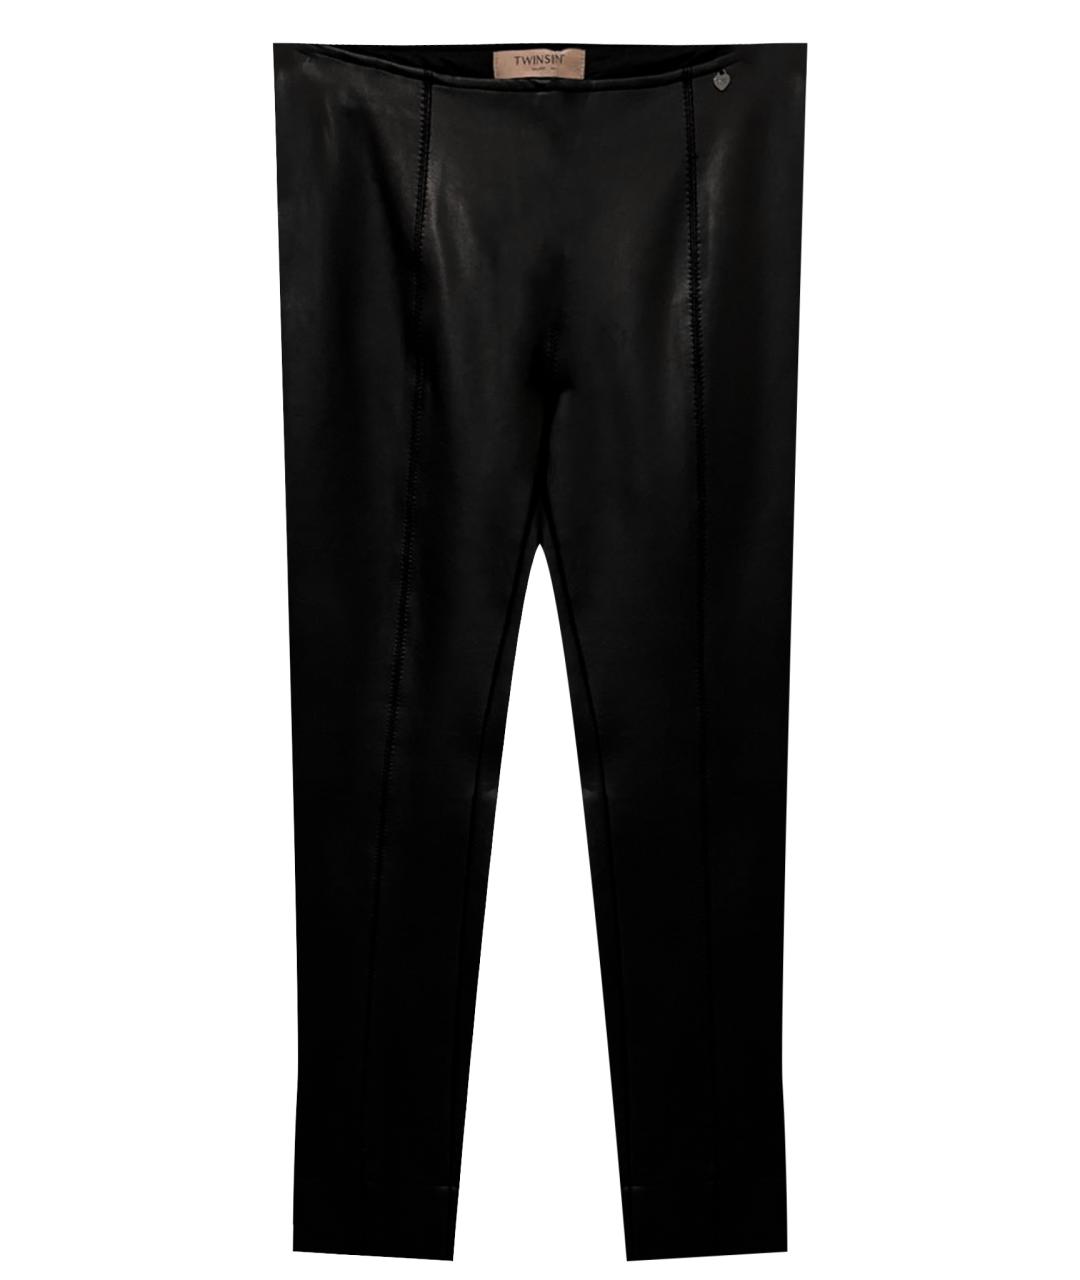 TWIN-SET Черные хлопковые брюки узкие, фото 1